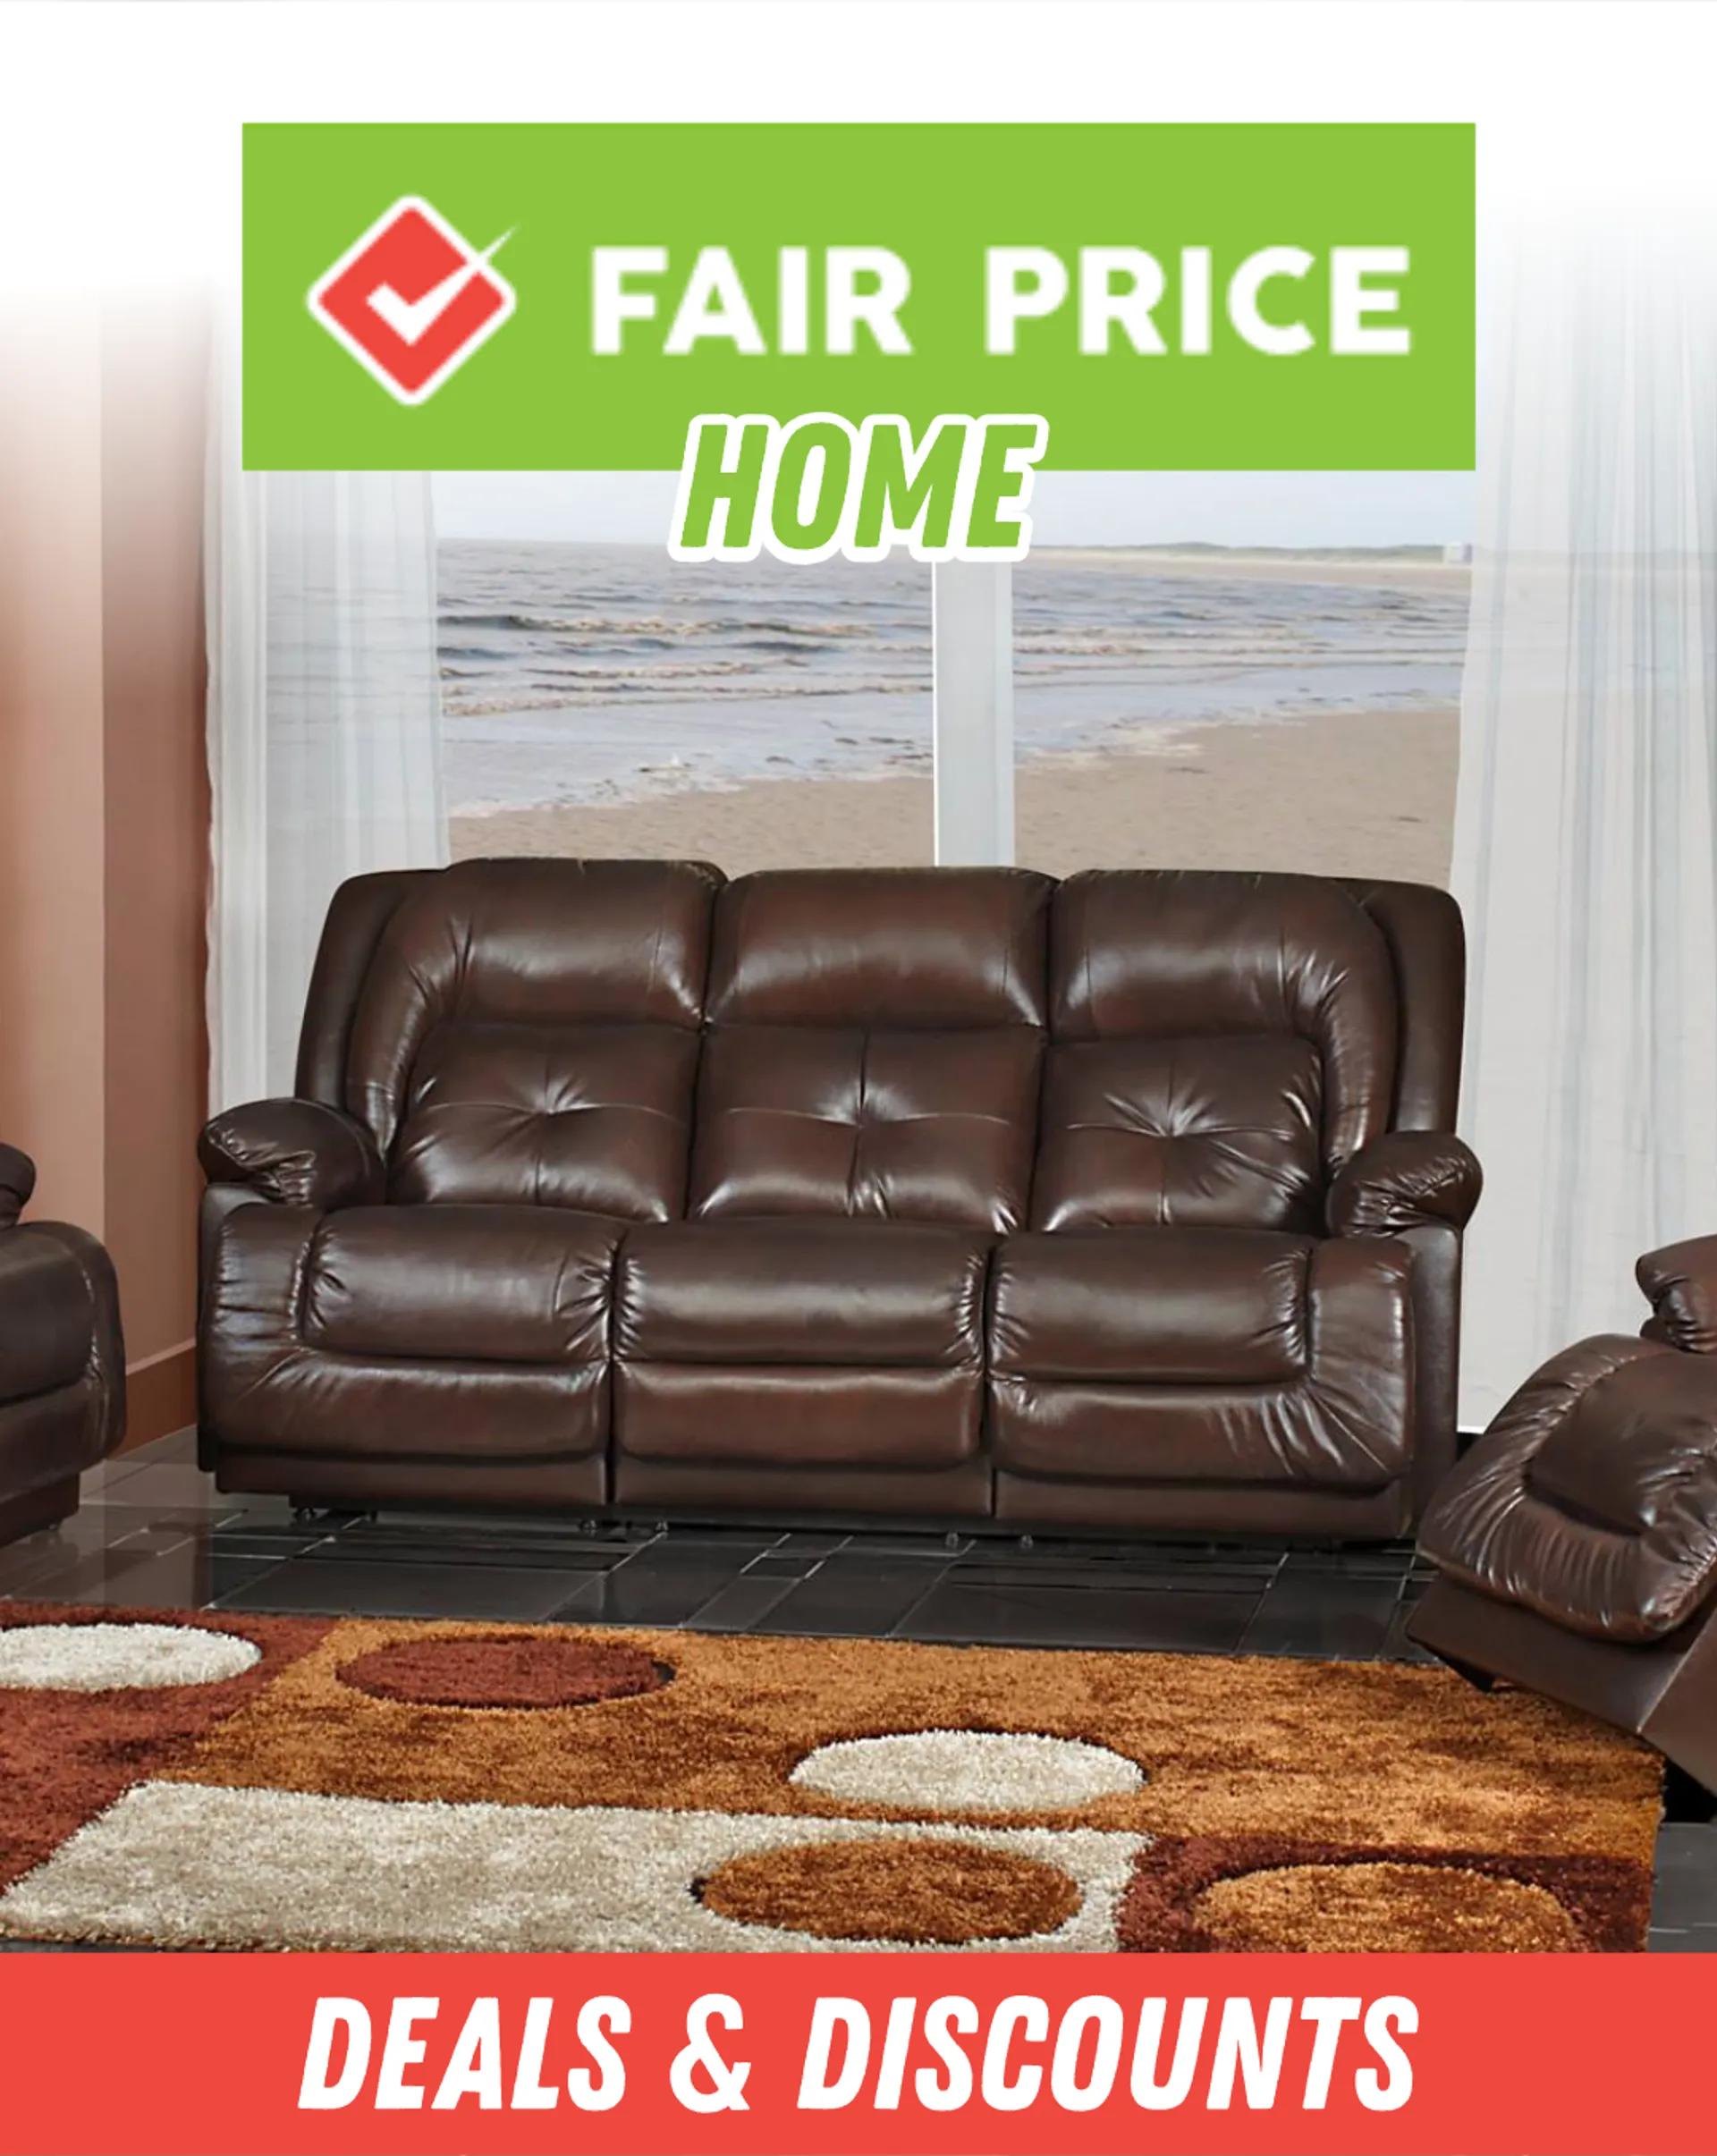 Fair Price - Home